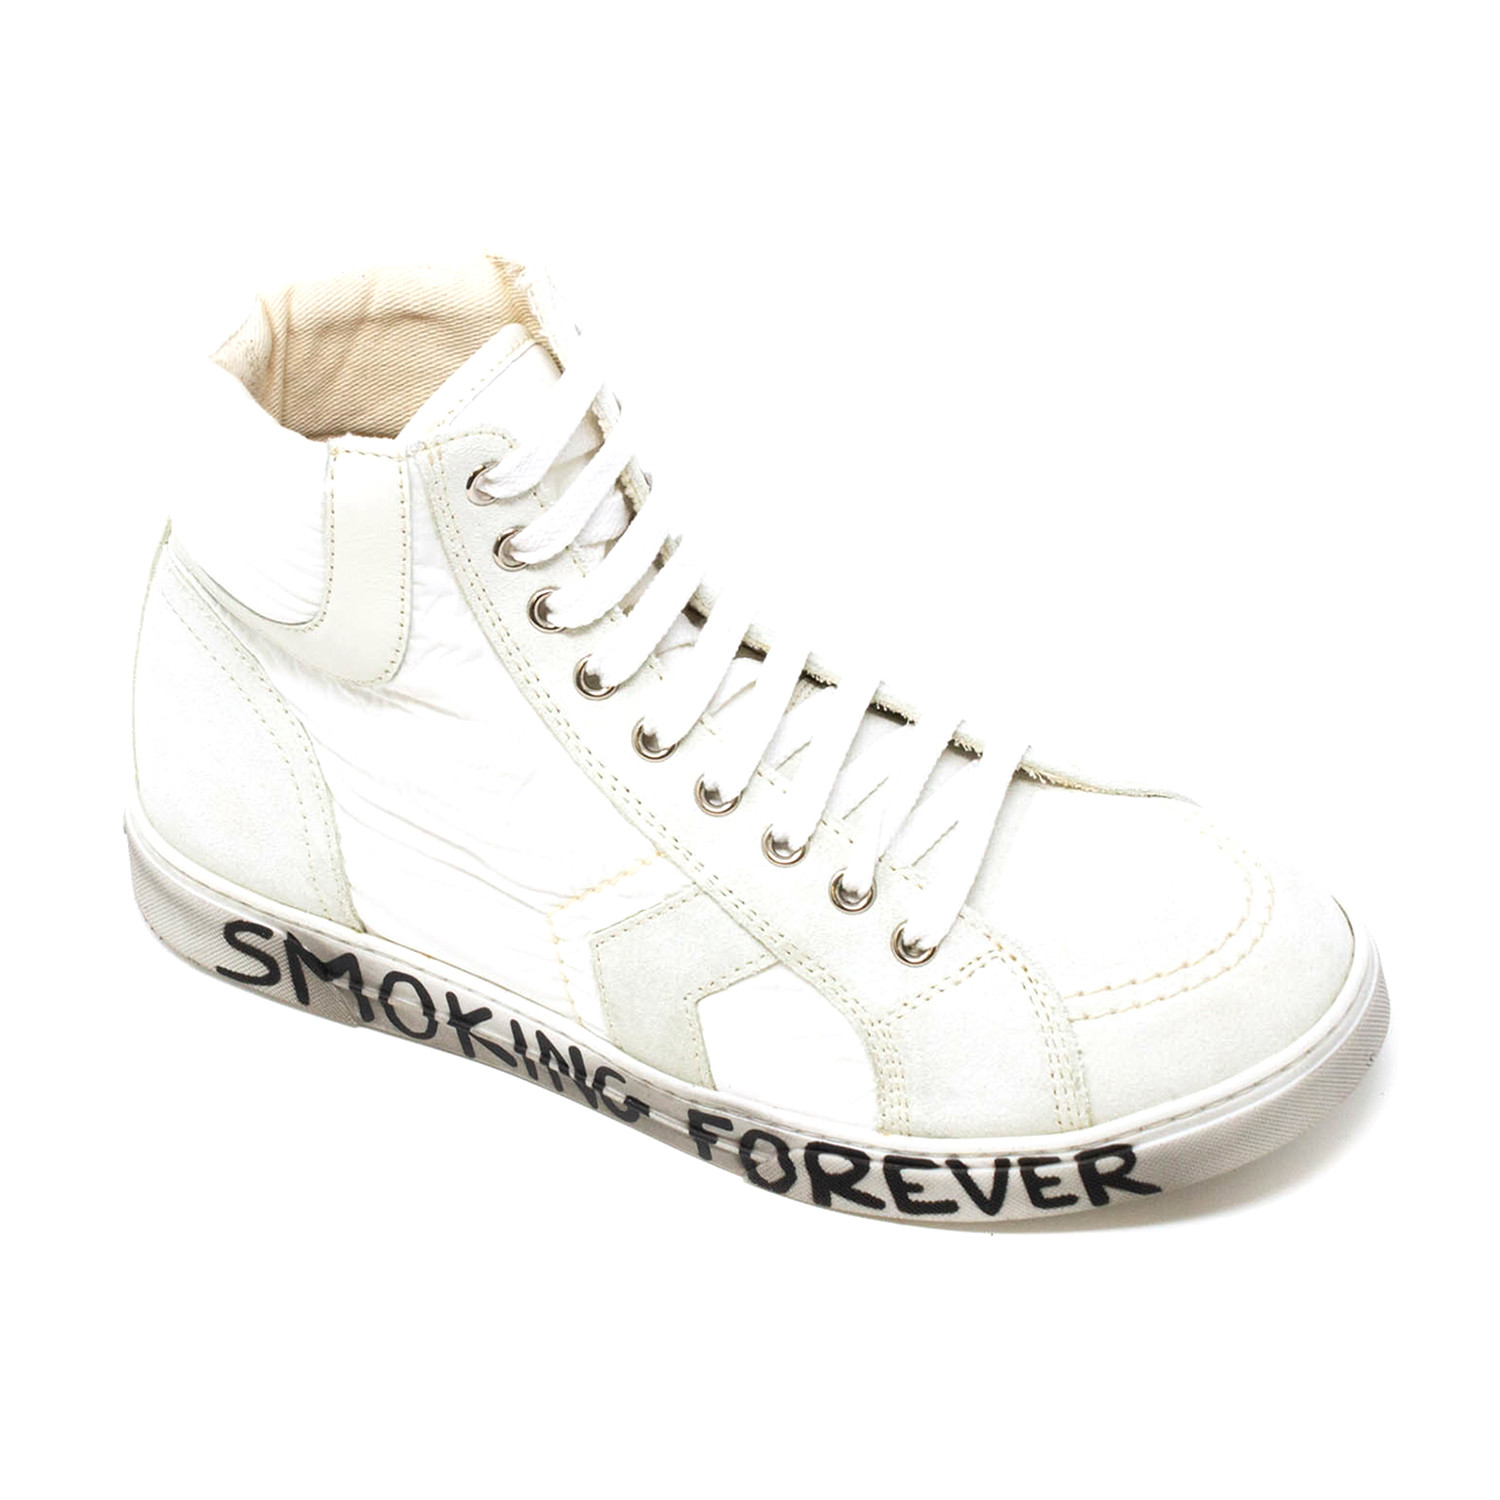 Yves Saint Laurent // Smoking Forever 